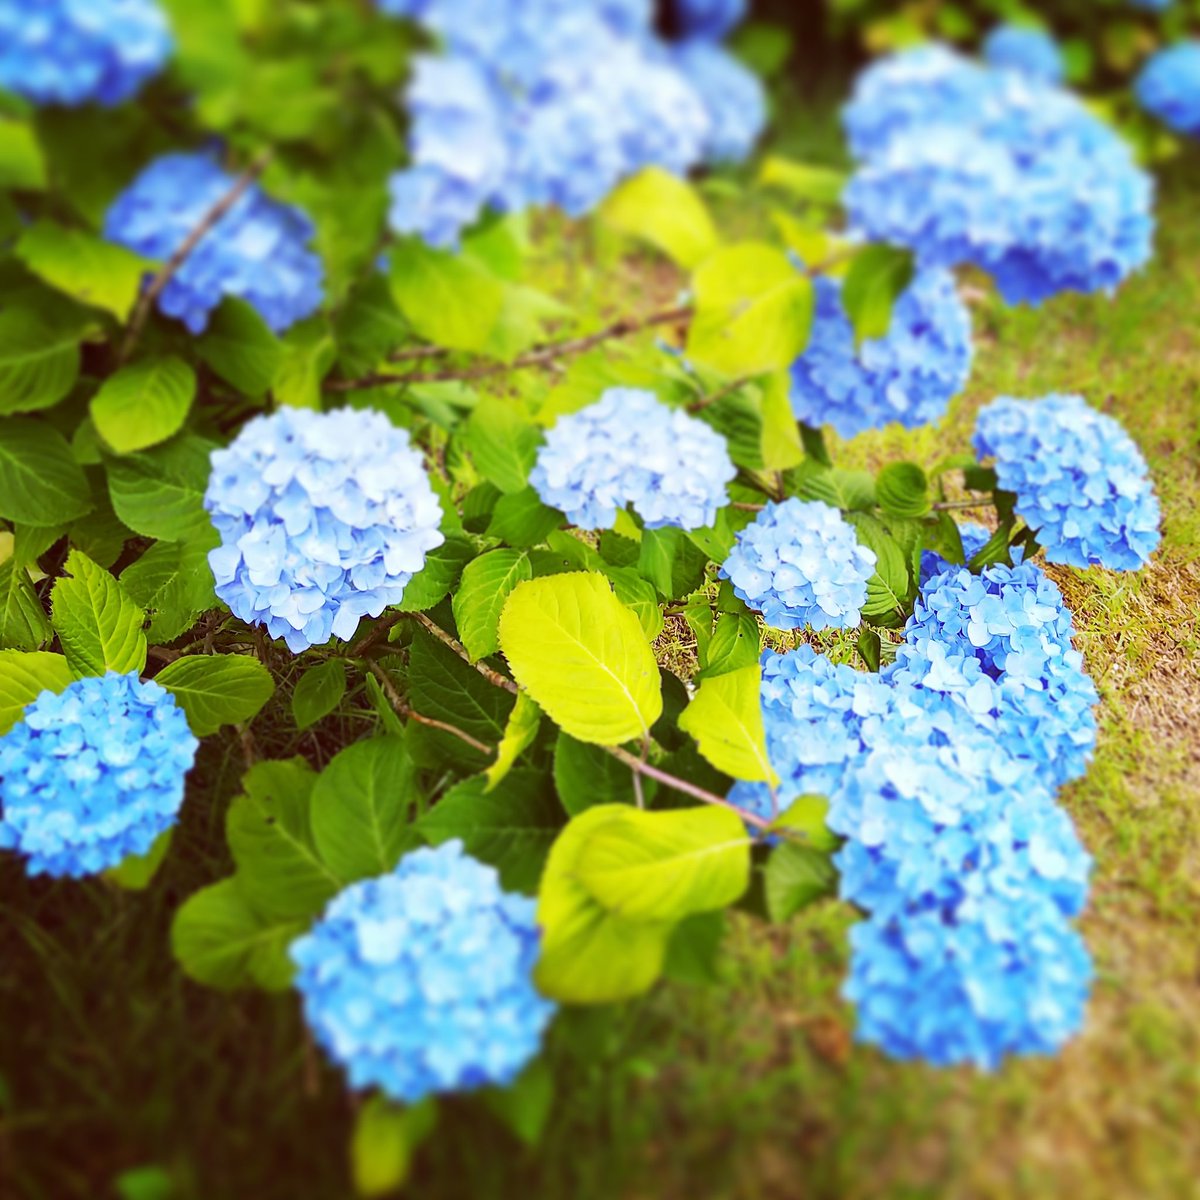 Gatchan アトリエバンド あじさいの揺れる6月の朝 新しい家族が生まれました この歌を書いてから 紫陽花を見ると可愛く思えます そして 神戸市民の花 が紫陽花ということを知り 何か運命的なものを感じました 笑 あじさい 紫陽花 六甲山